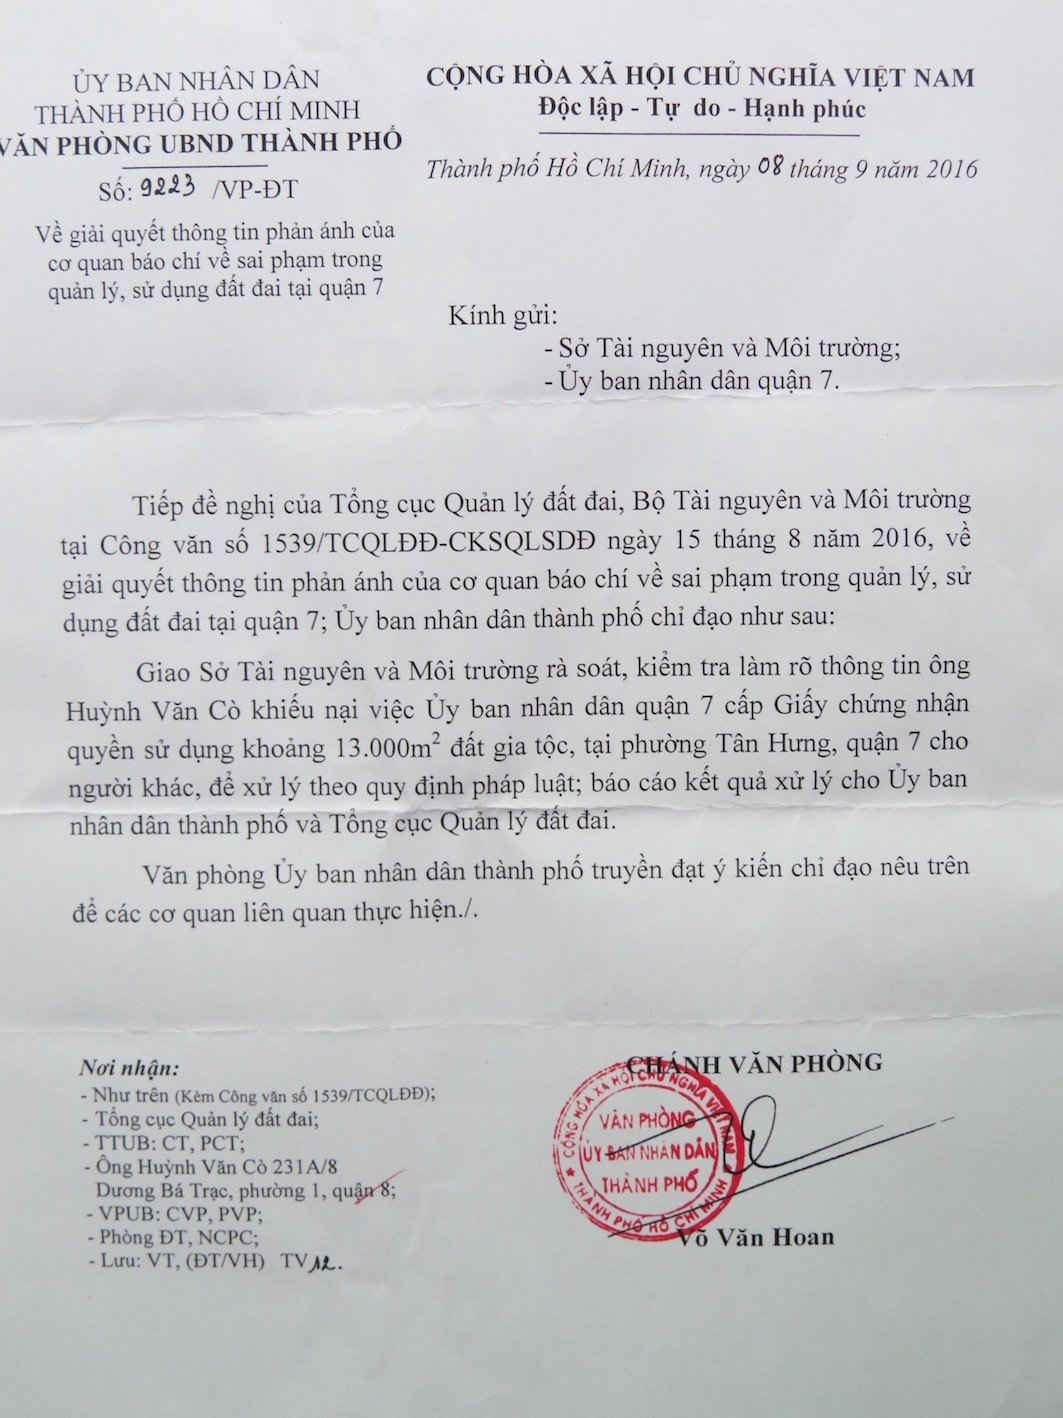  Ngày 8/9/2015, Chánh Văn phòng UBND TP Hồ Chí Minh, đã có Văn bản số 9223/VP-ĐT giao cơ quan chuyên môn  rà soát, kiểm tra vụ việc theo yêu cầu của Tổng cục Quản lý đất đai. 